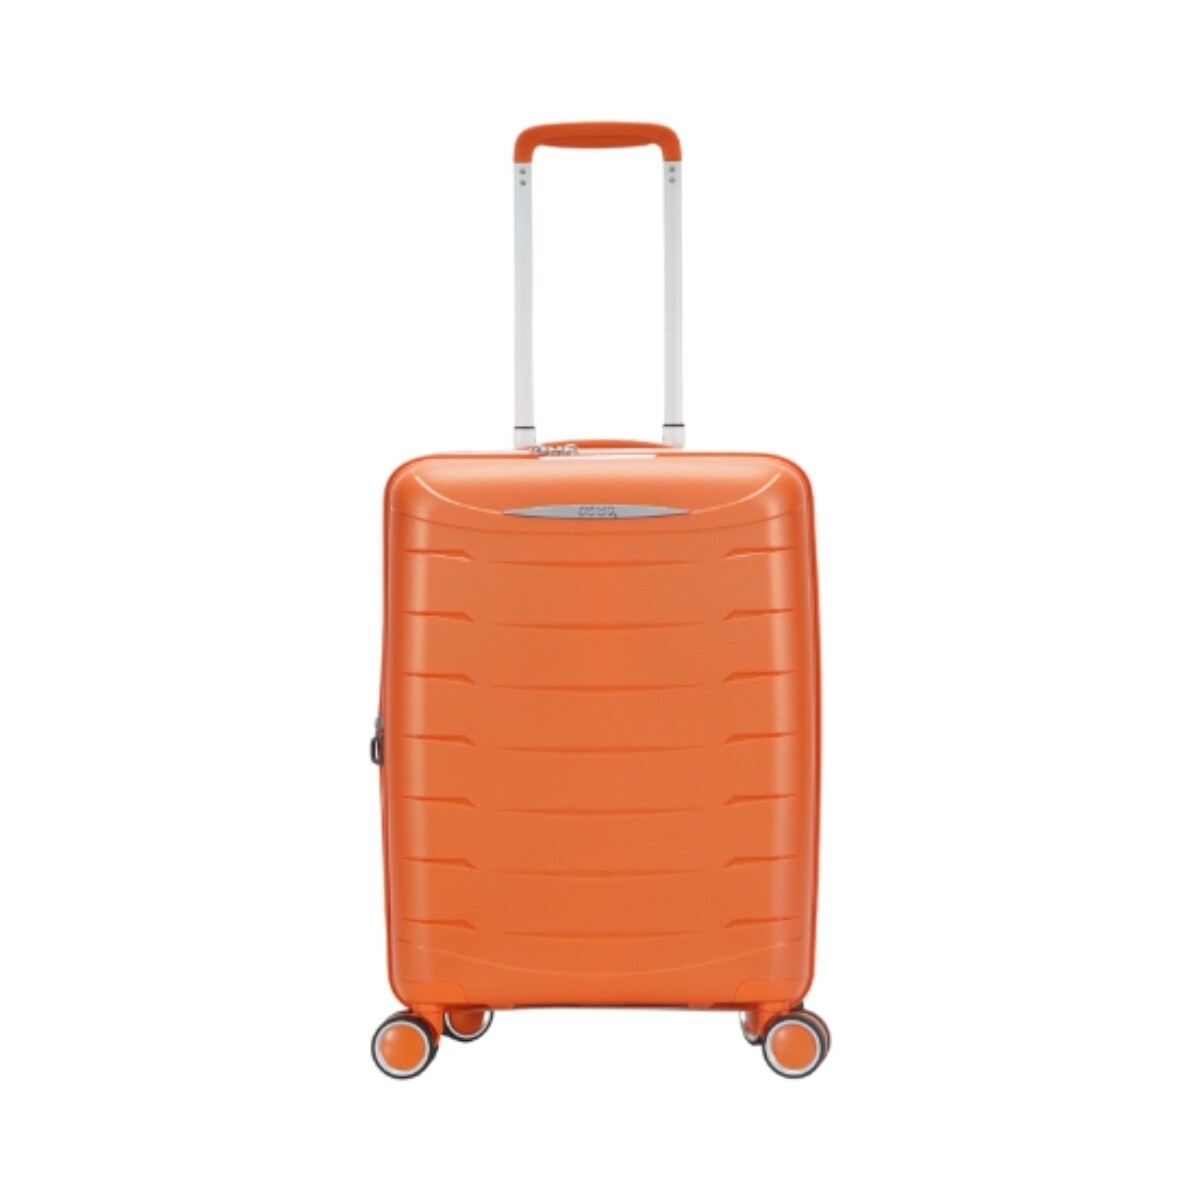 Sacs Valises Rigides Jump Valise rigide cabine  Ref 60607 Orange 55*38*20 cm Orange